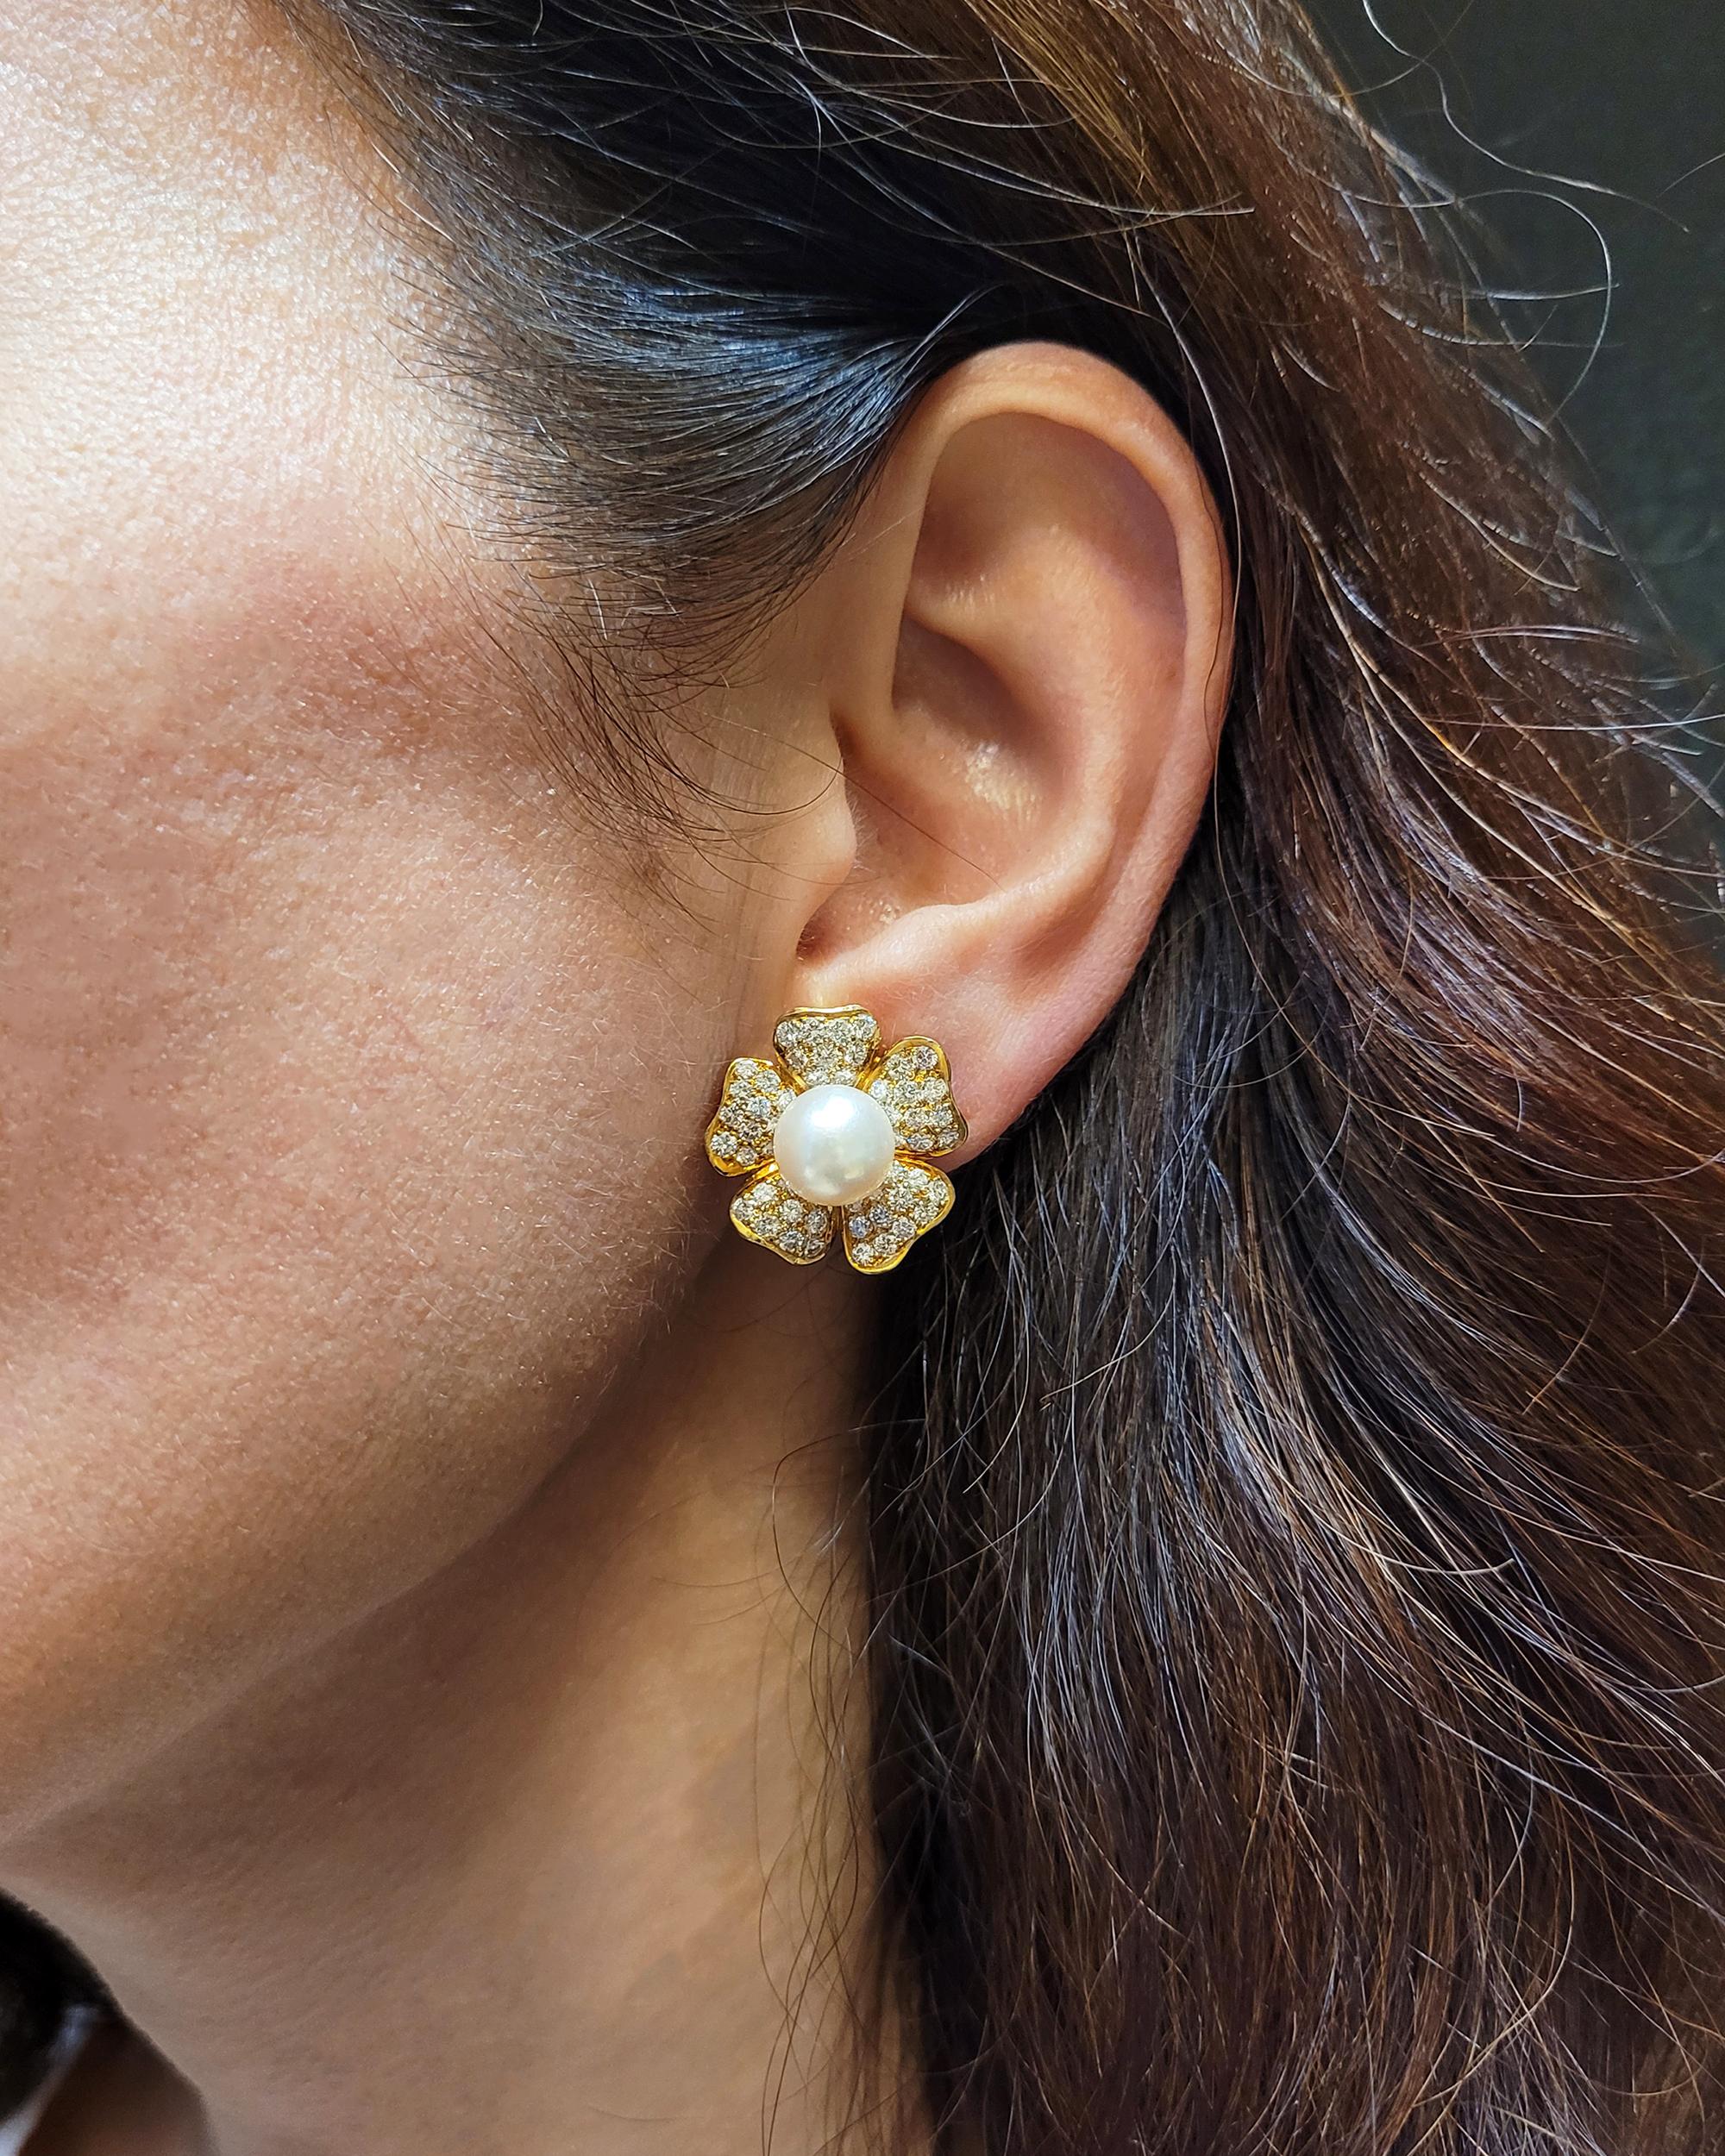 Une belle paire de boucles d'oreilles Van Cleef & Arpels serties de perles et de diamants. 
Chacune est sertie d'une perle centrale entourée de diamants ronds, la plupart de couleur E-F et de pureté VS.
Le poids estimé des diamants est de 5,50